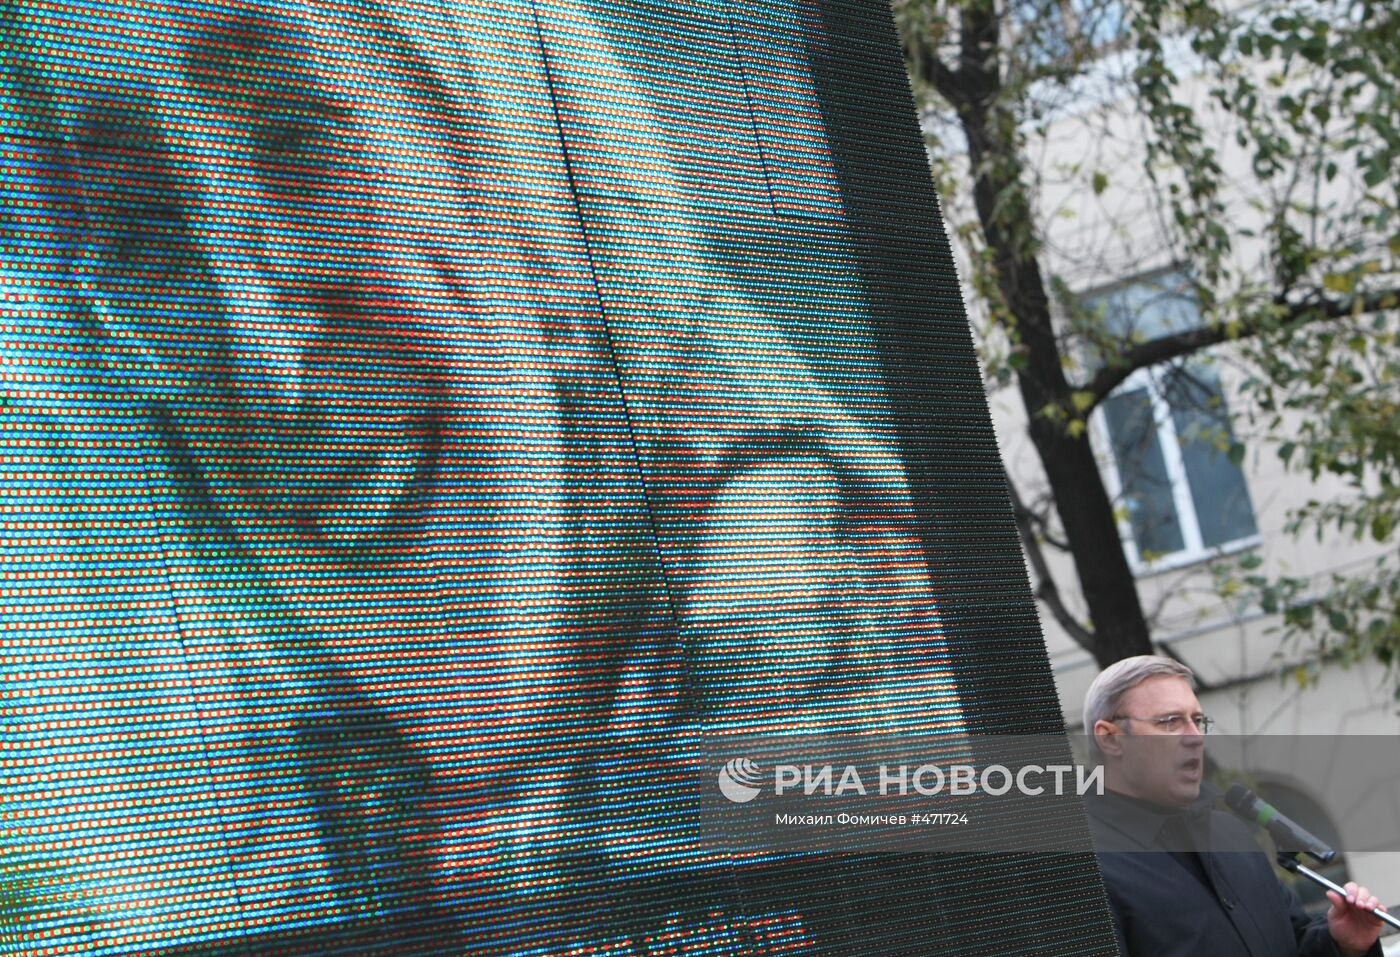 Михаил Касьянов на митинге памяти Анны Политковской в Москве